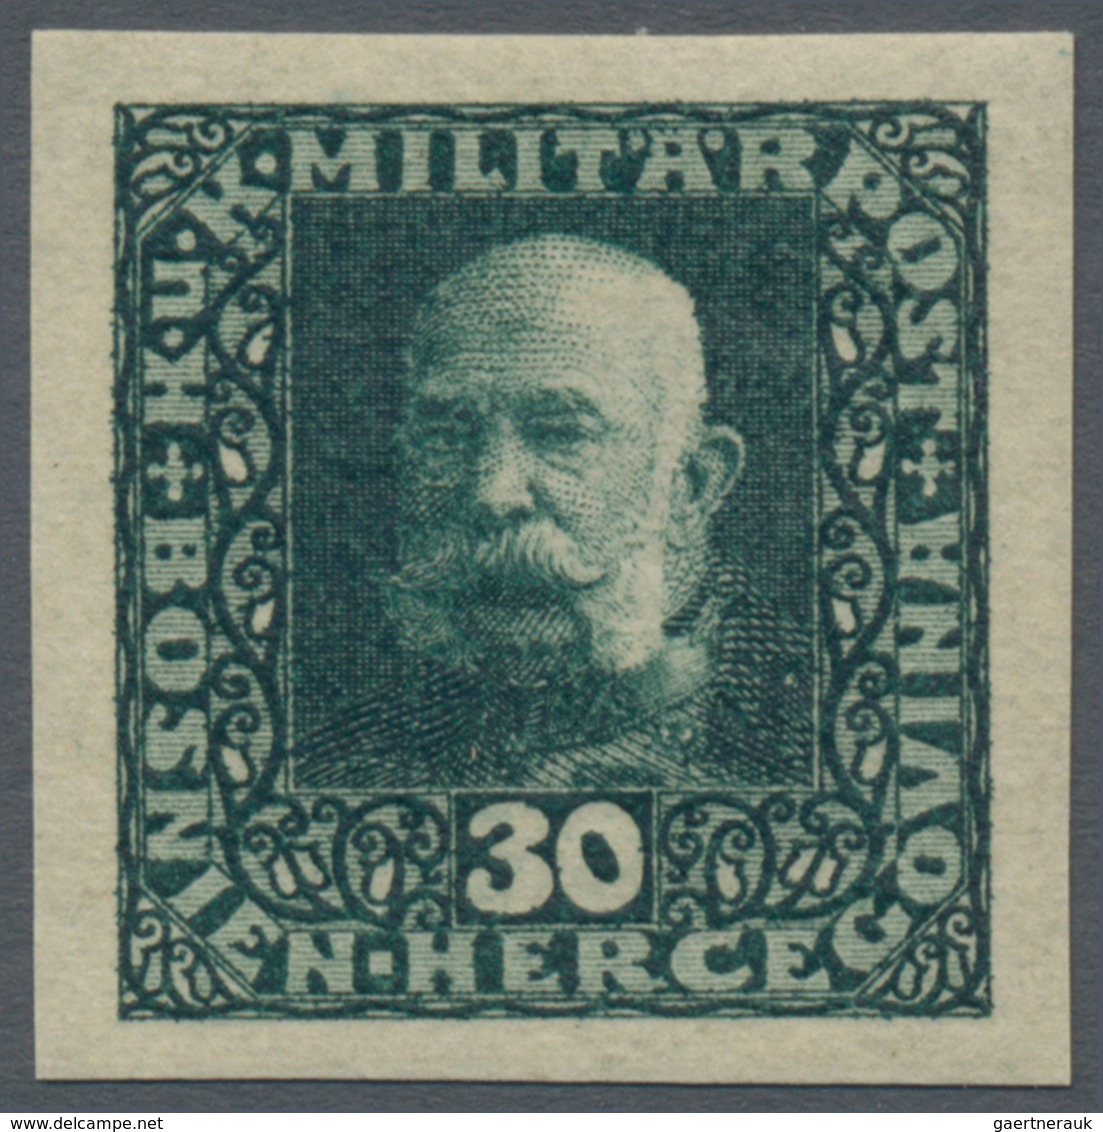 Bosnien und Herzegowina (Österreich 1879/1918): 1916, Freimarken Franz Joseph, 3 H bis 10 Kr. UNGEZÄ